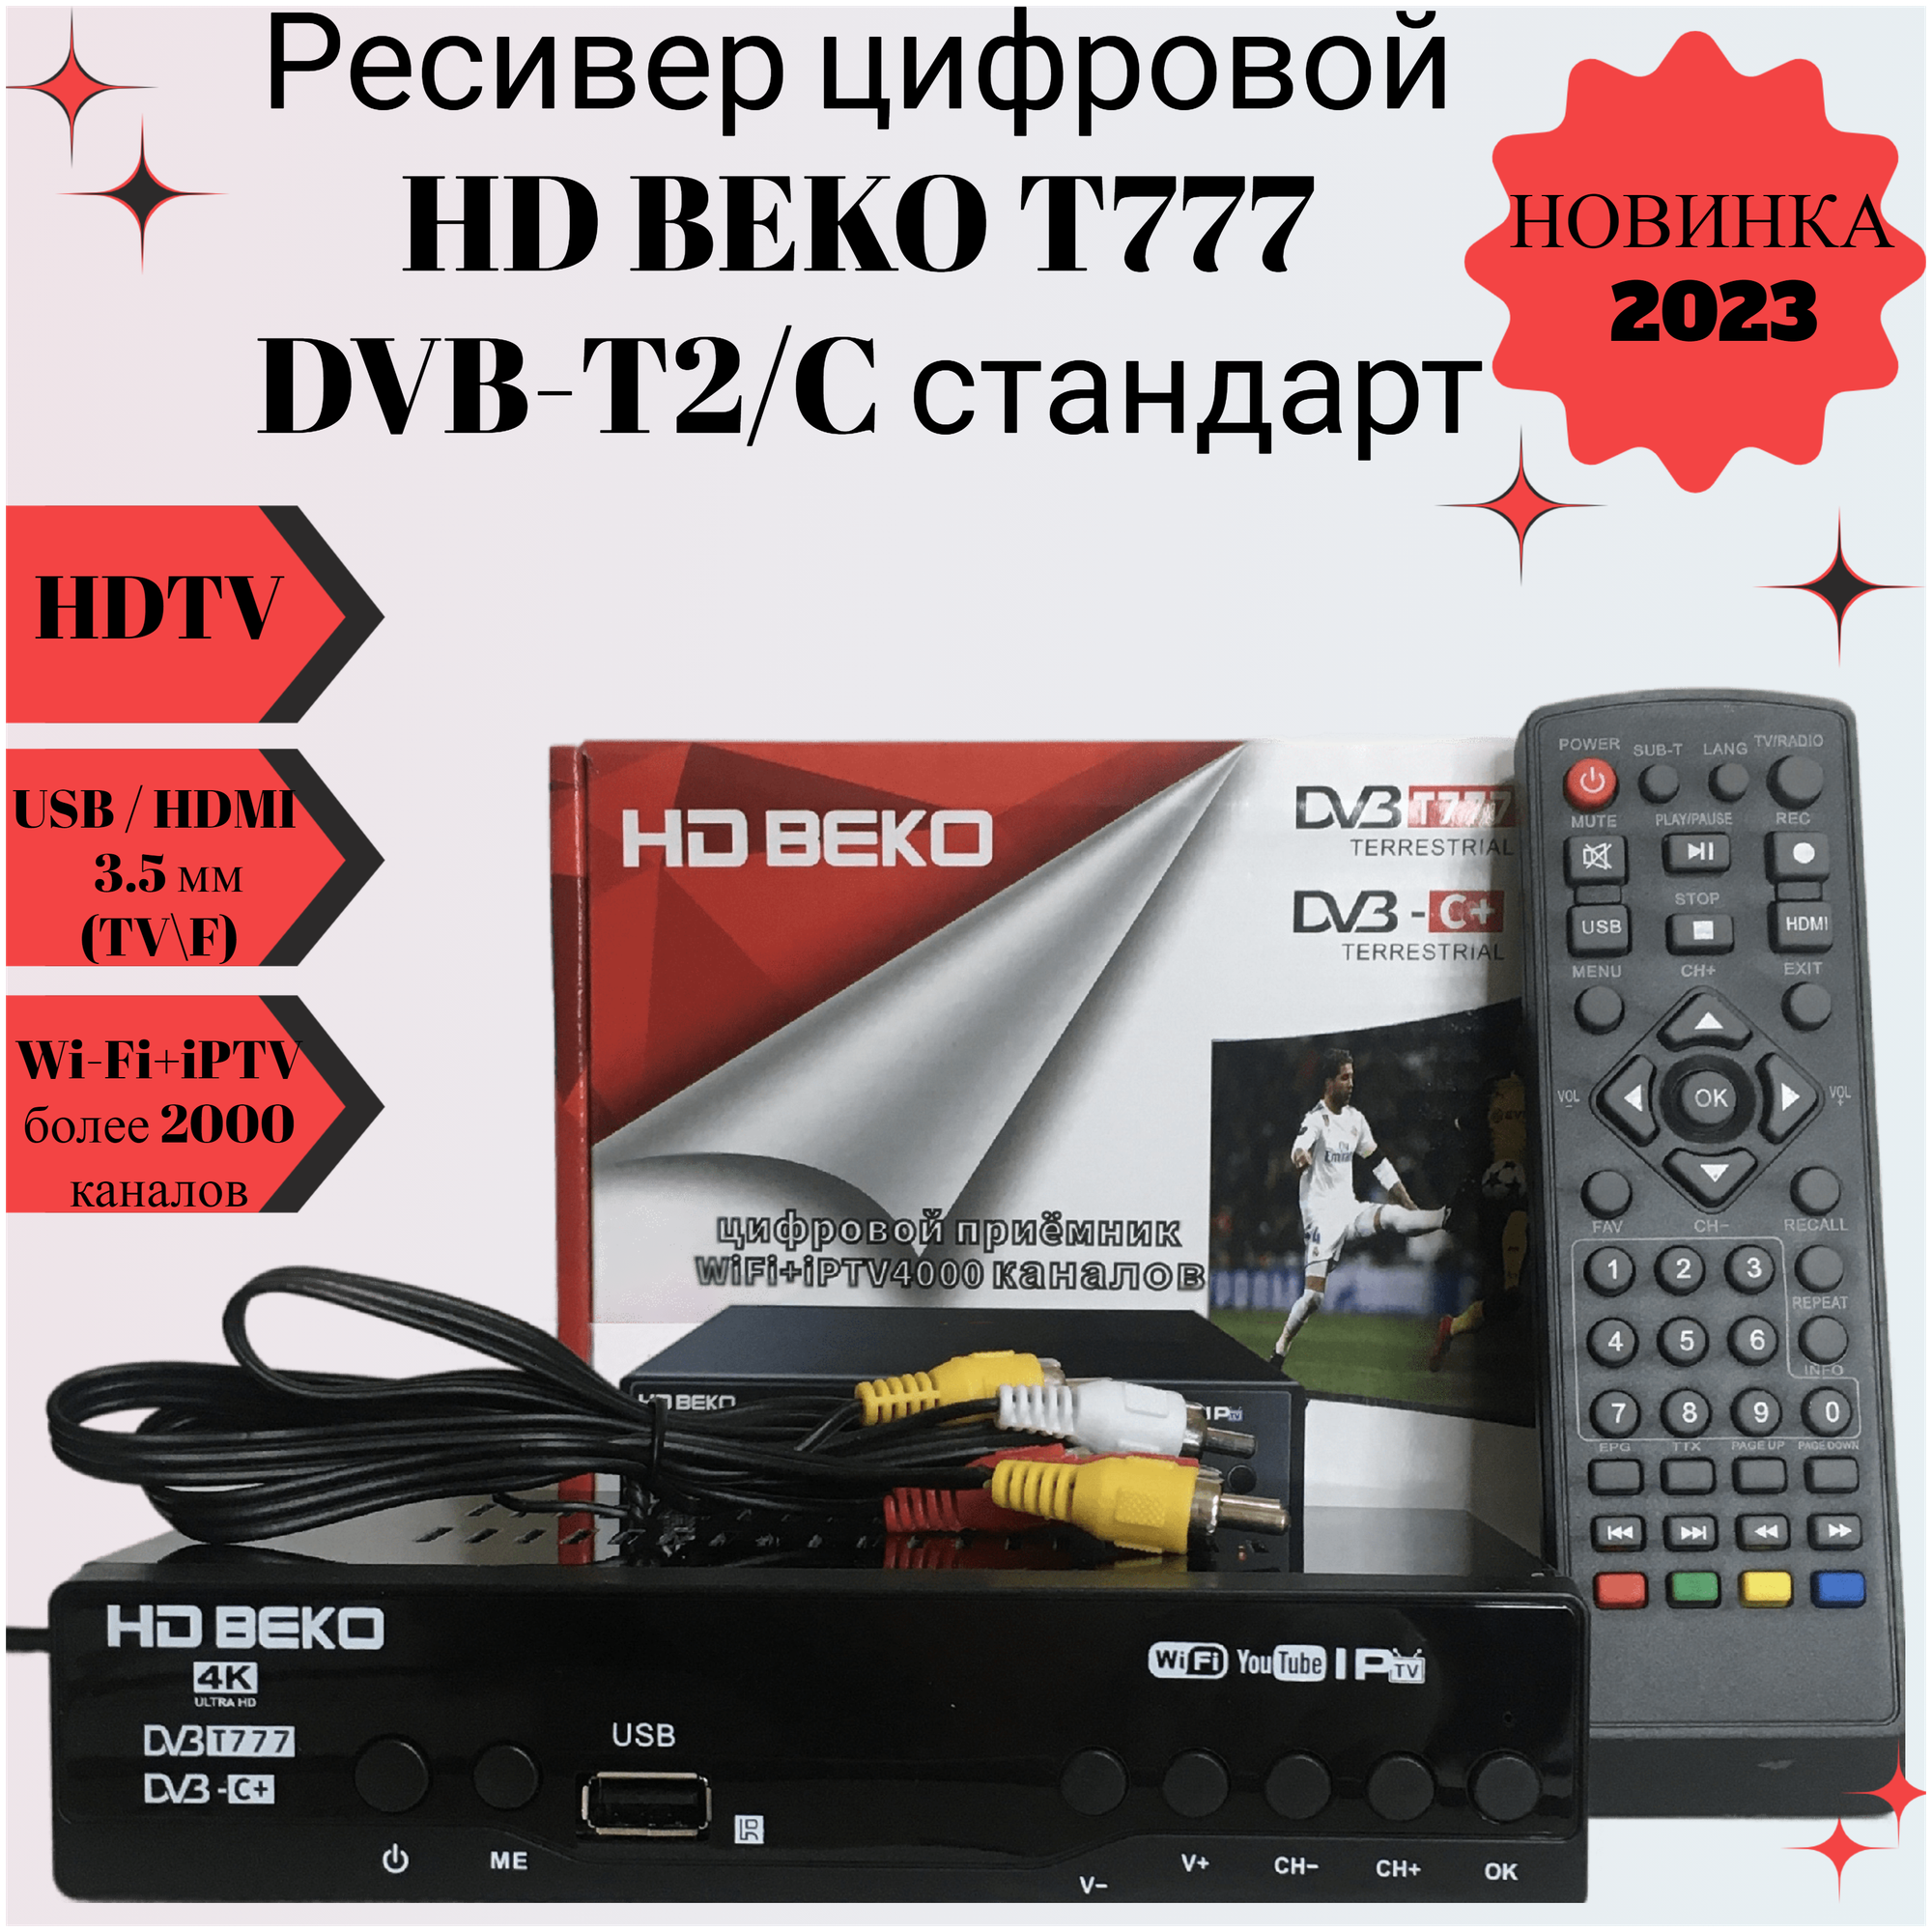 Ресивер цифровой HD BEKO T777/B555 эфирный DVB-T2/C стандарт тв приставка бесплатное тв TV-тюнер цифровой приёмник